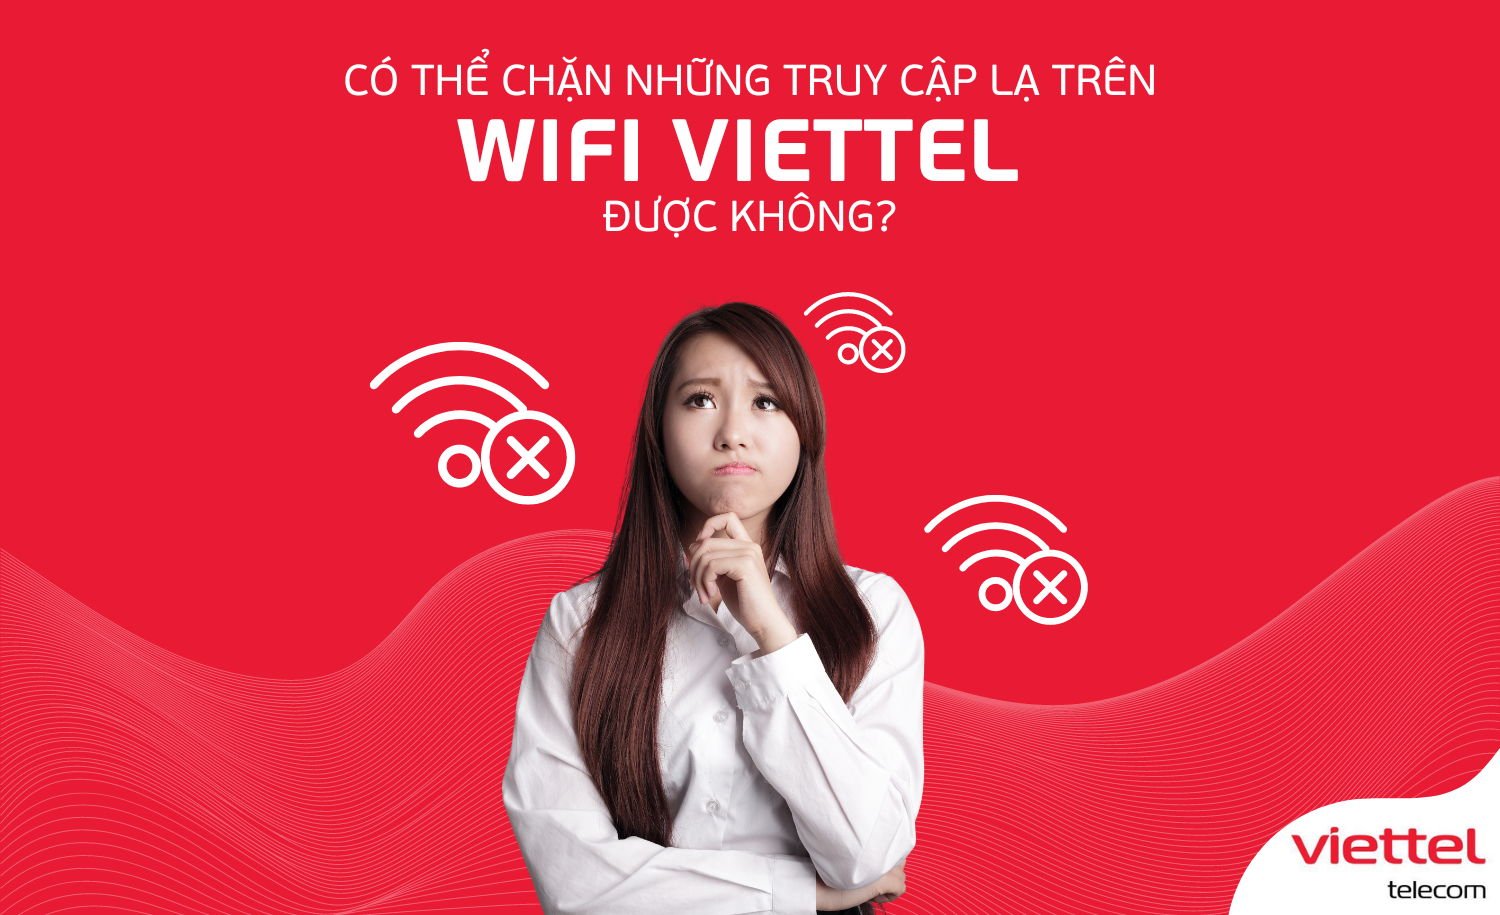 Có thể chặn những truy cập lạ trên wifi Viettel được không?